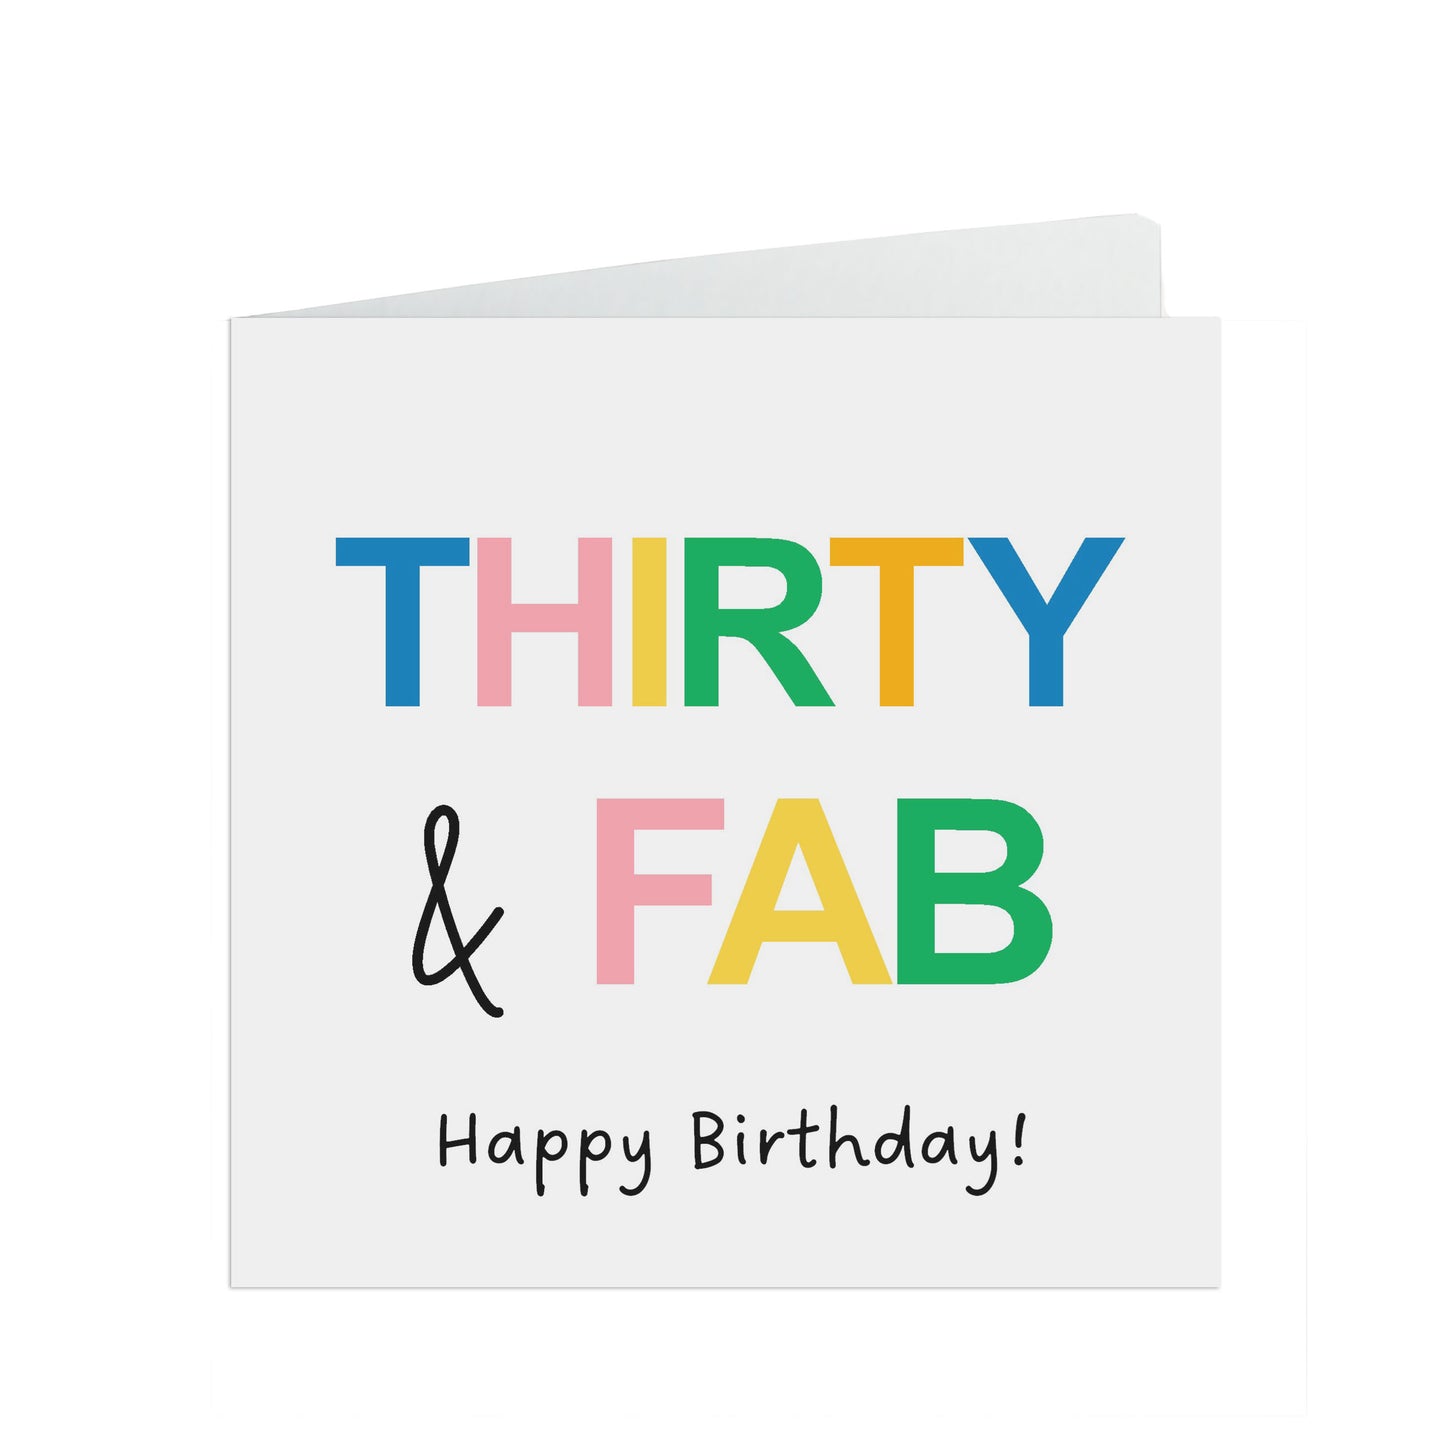 Thirty & Fab Birthday Card